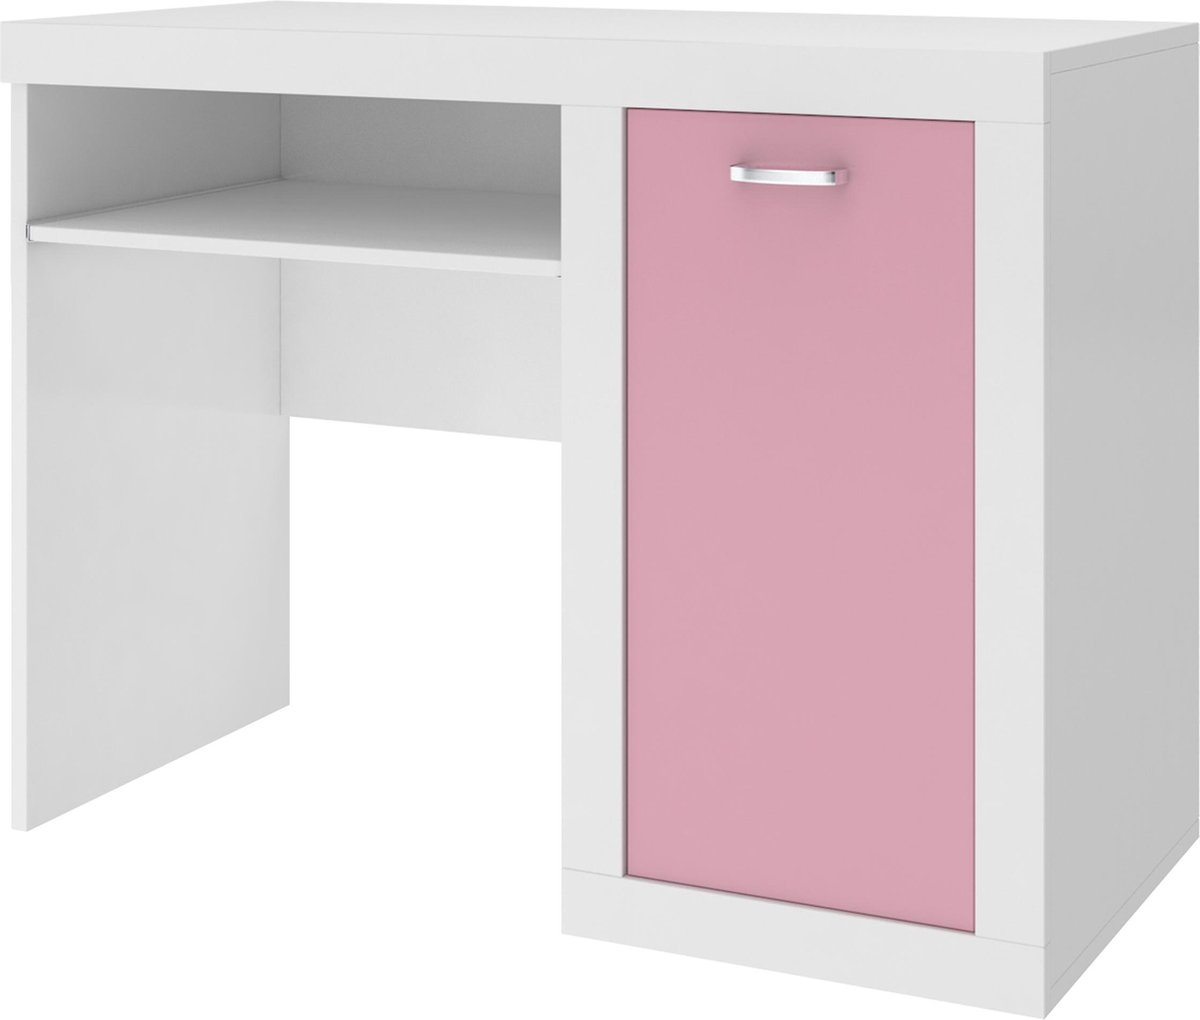 Kinder bureau - 100x80x52 cm wit/roze opbergschap | bol.com